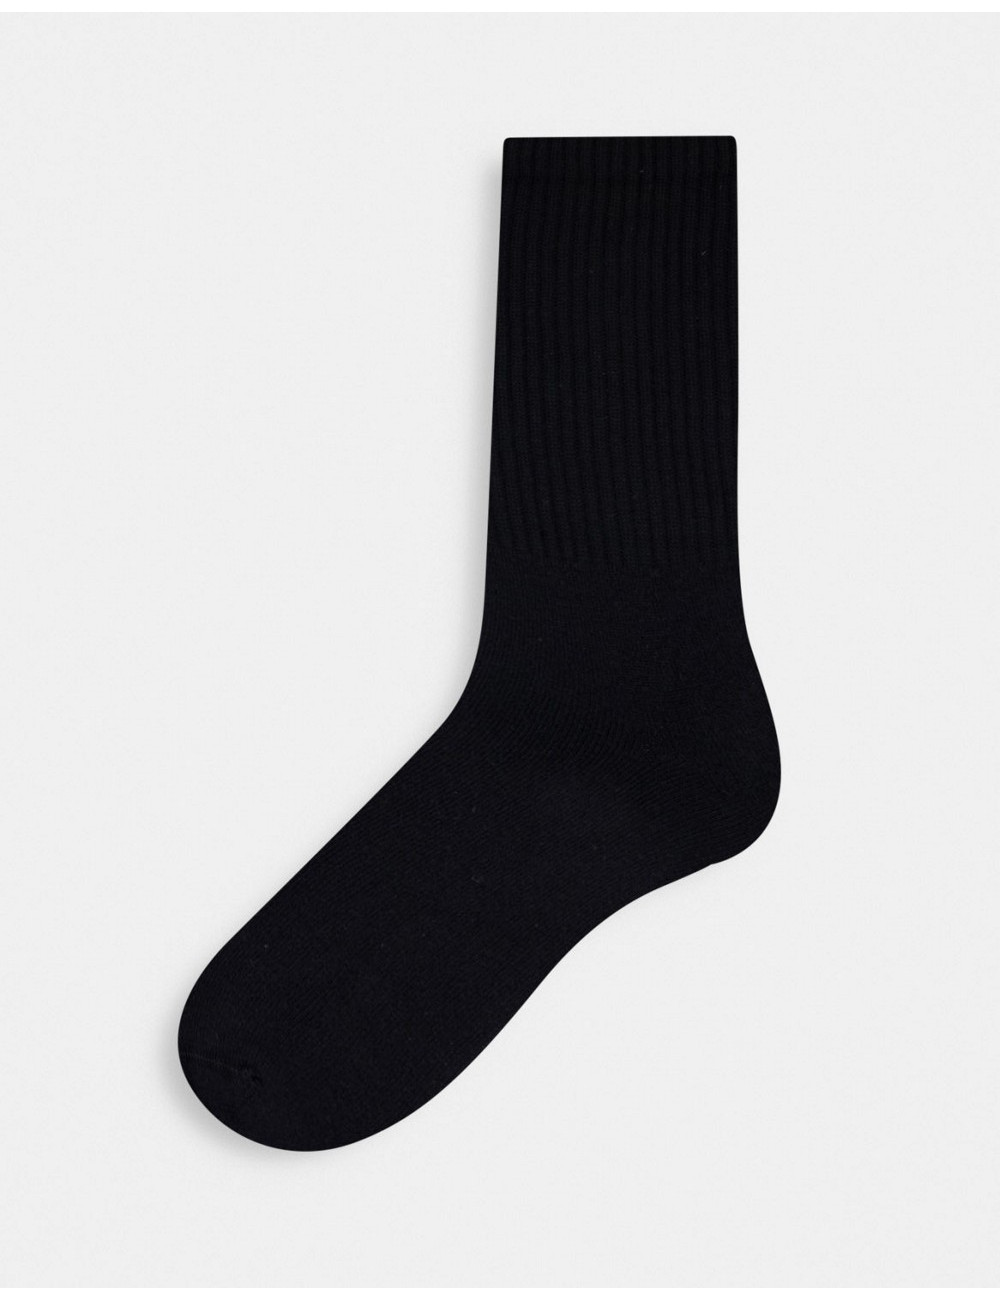 Topman tube socks in black